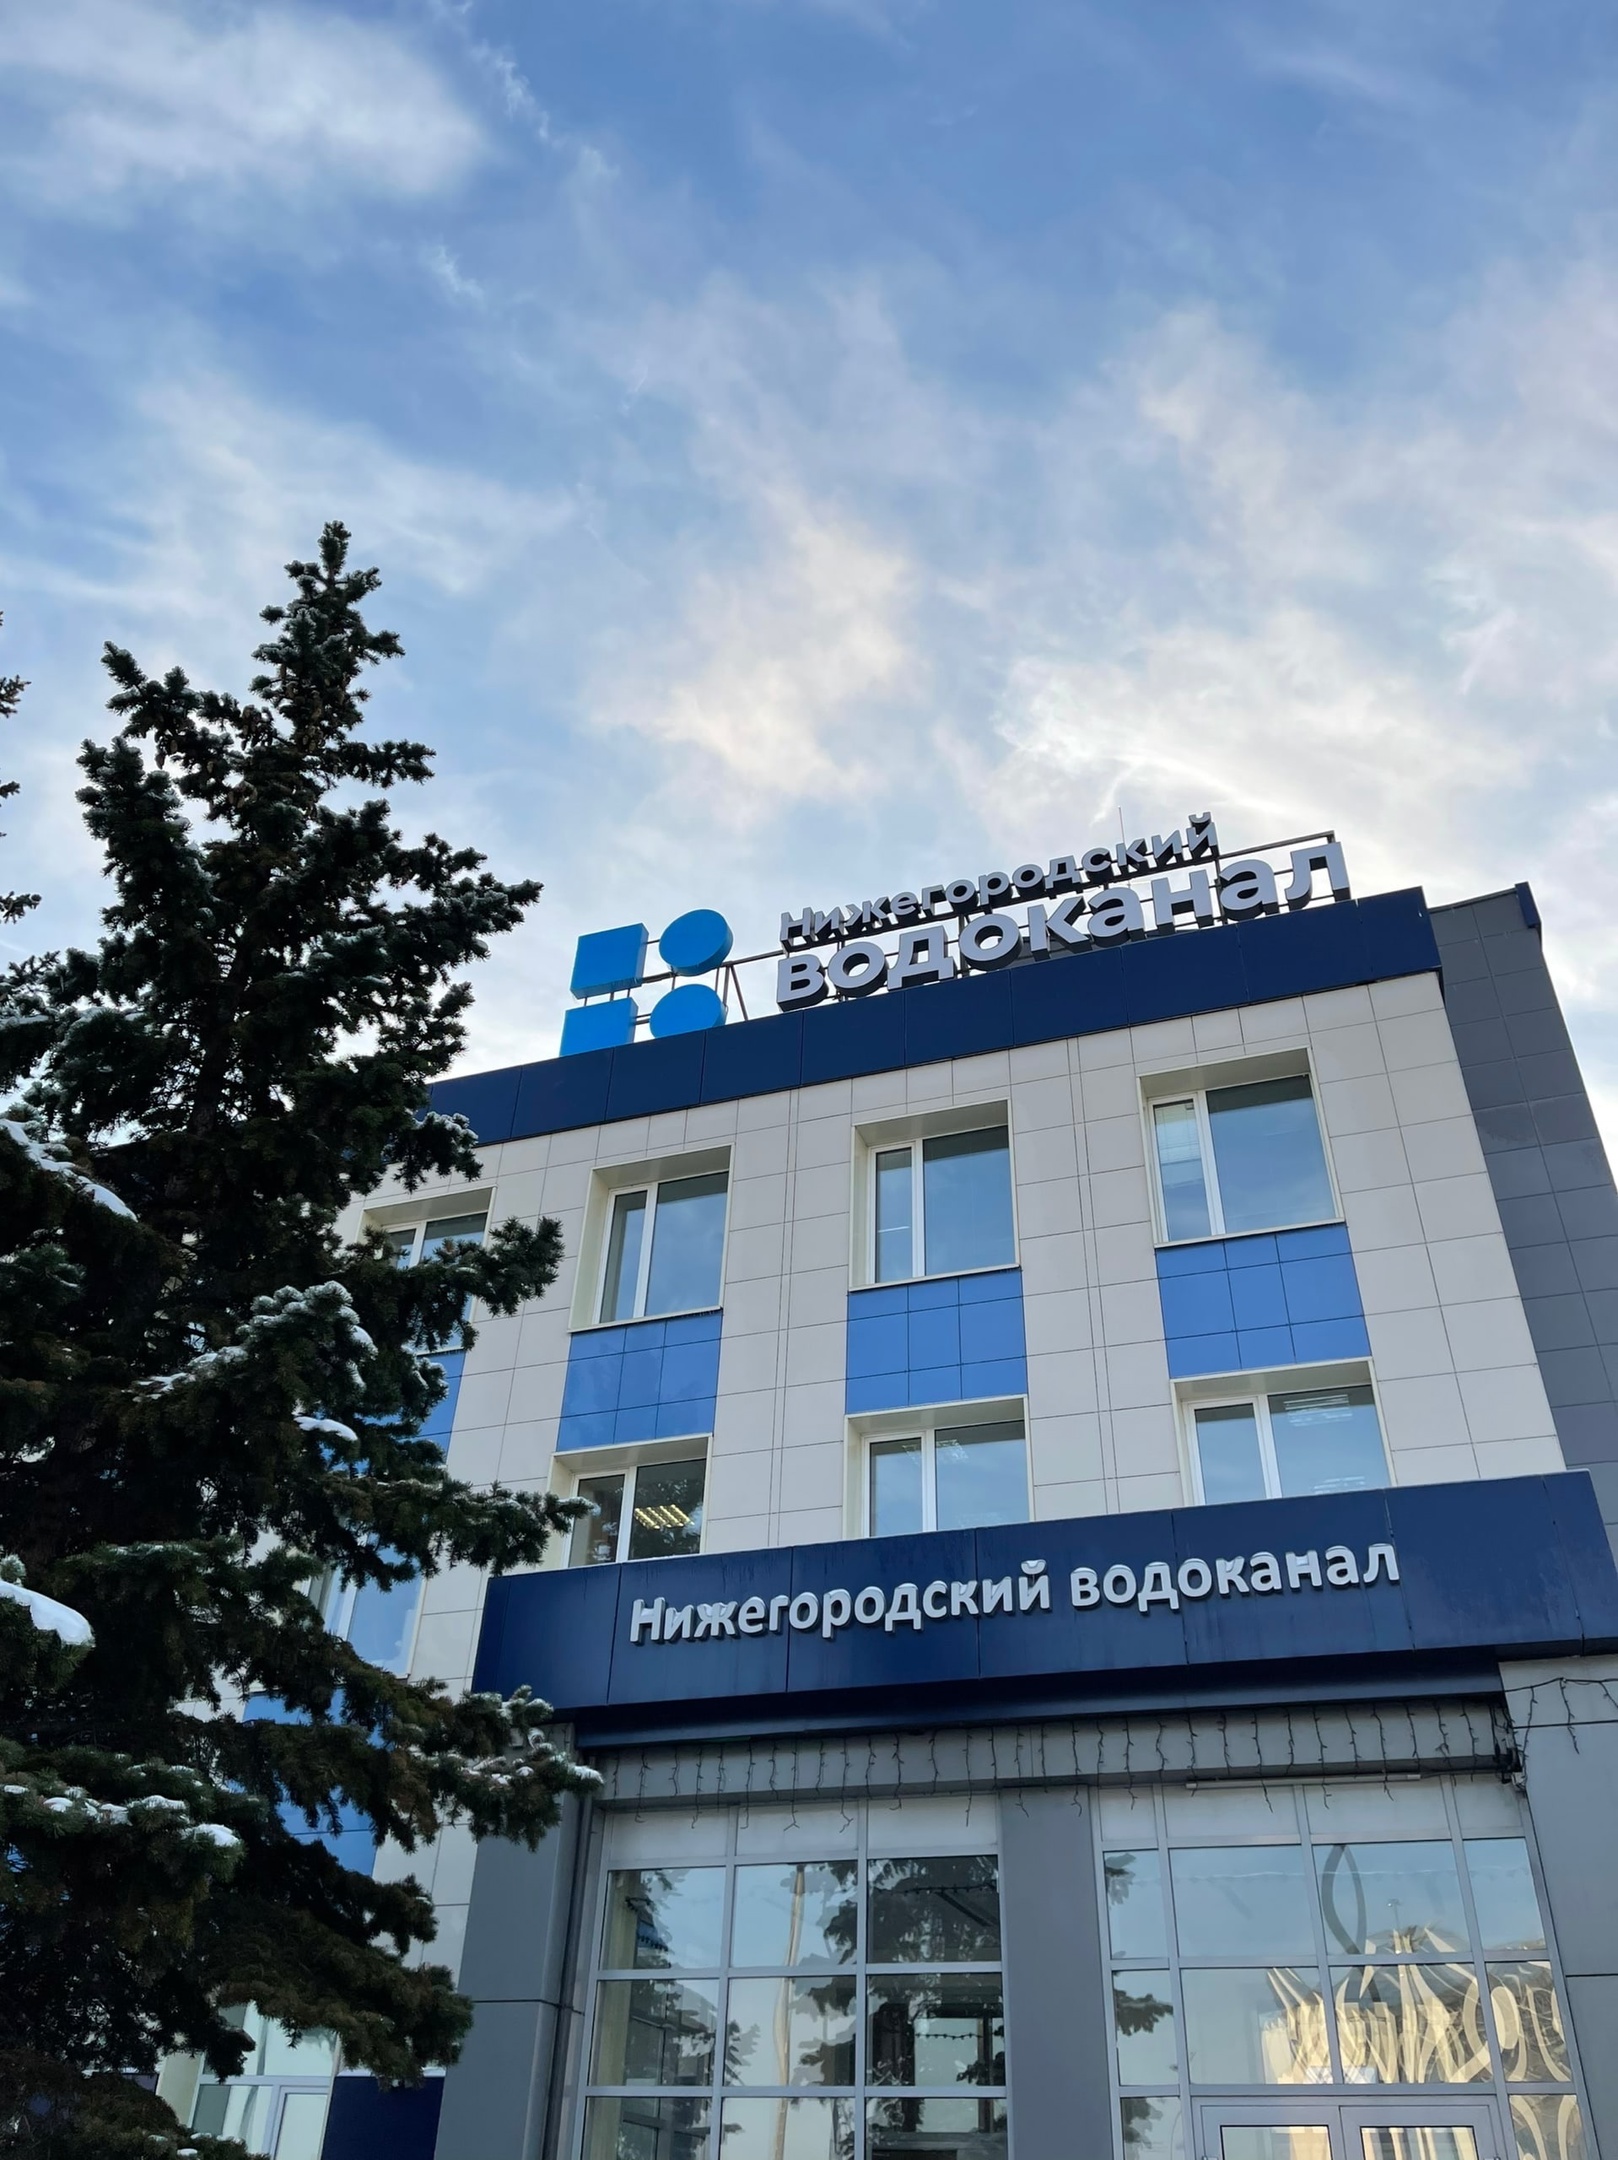 8 млн. рублей пеней смогли списать абоненты Нижегородского водоканала в рамках акции «В новый год без долгов» в 2022 году